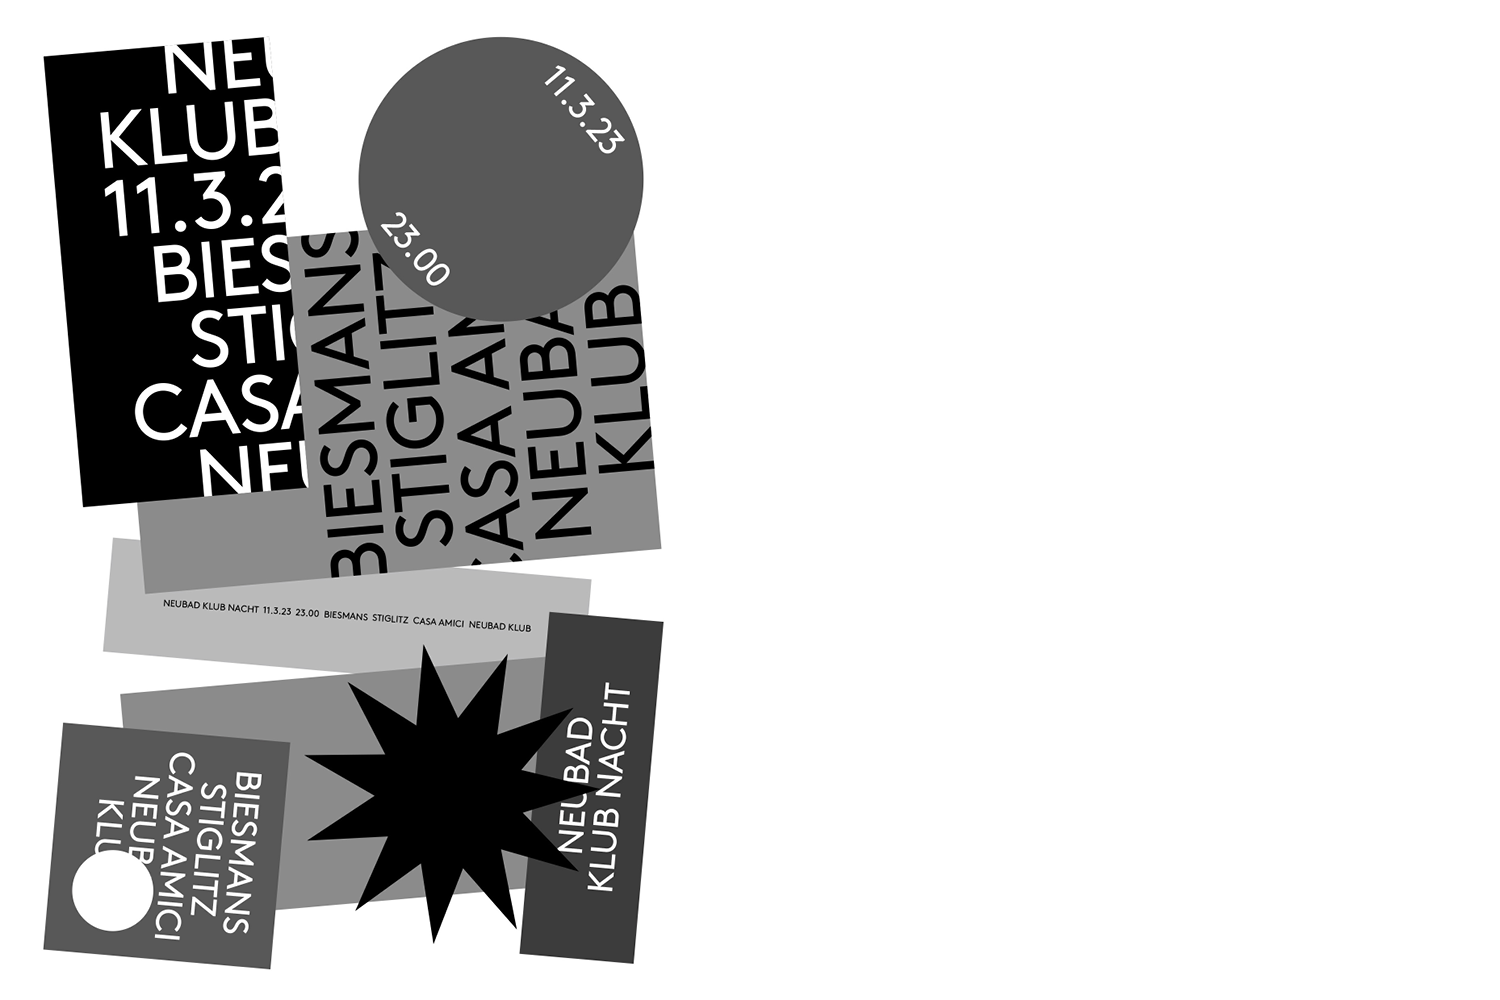 Plakat für die Klubnacht mit Biesmans, Stiglitz und Casa Amici. Darauf sind Rechtecke, Kreise und ein Stern in verschiedenen Grautönen und Schwarz zu sehen. 